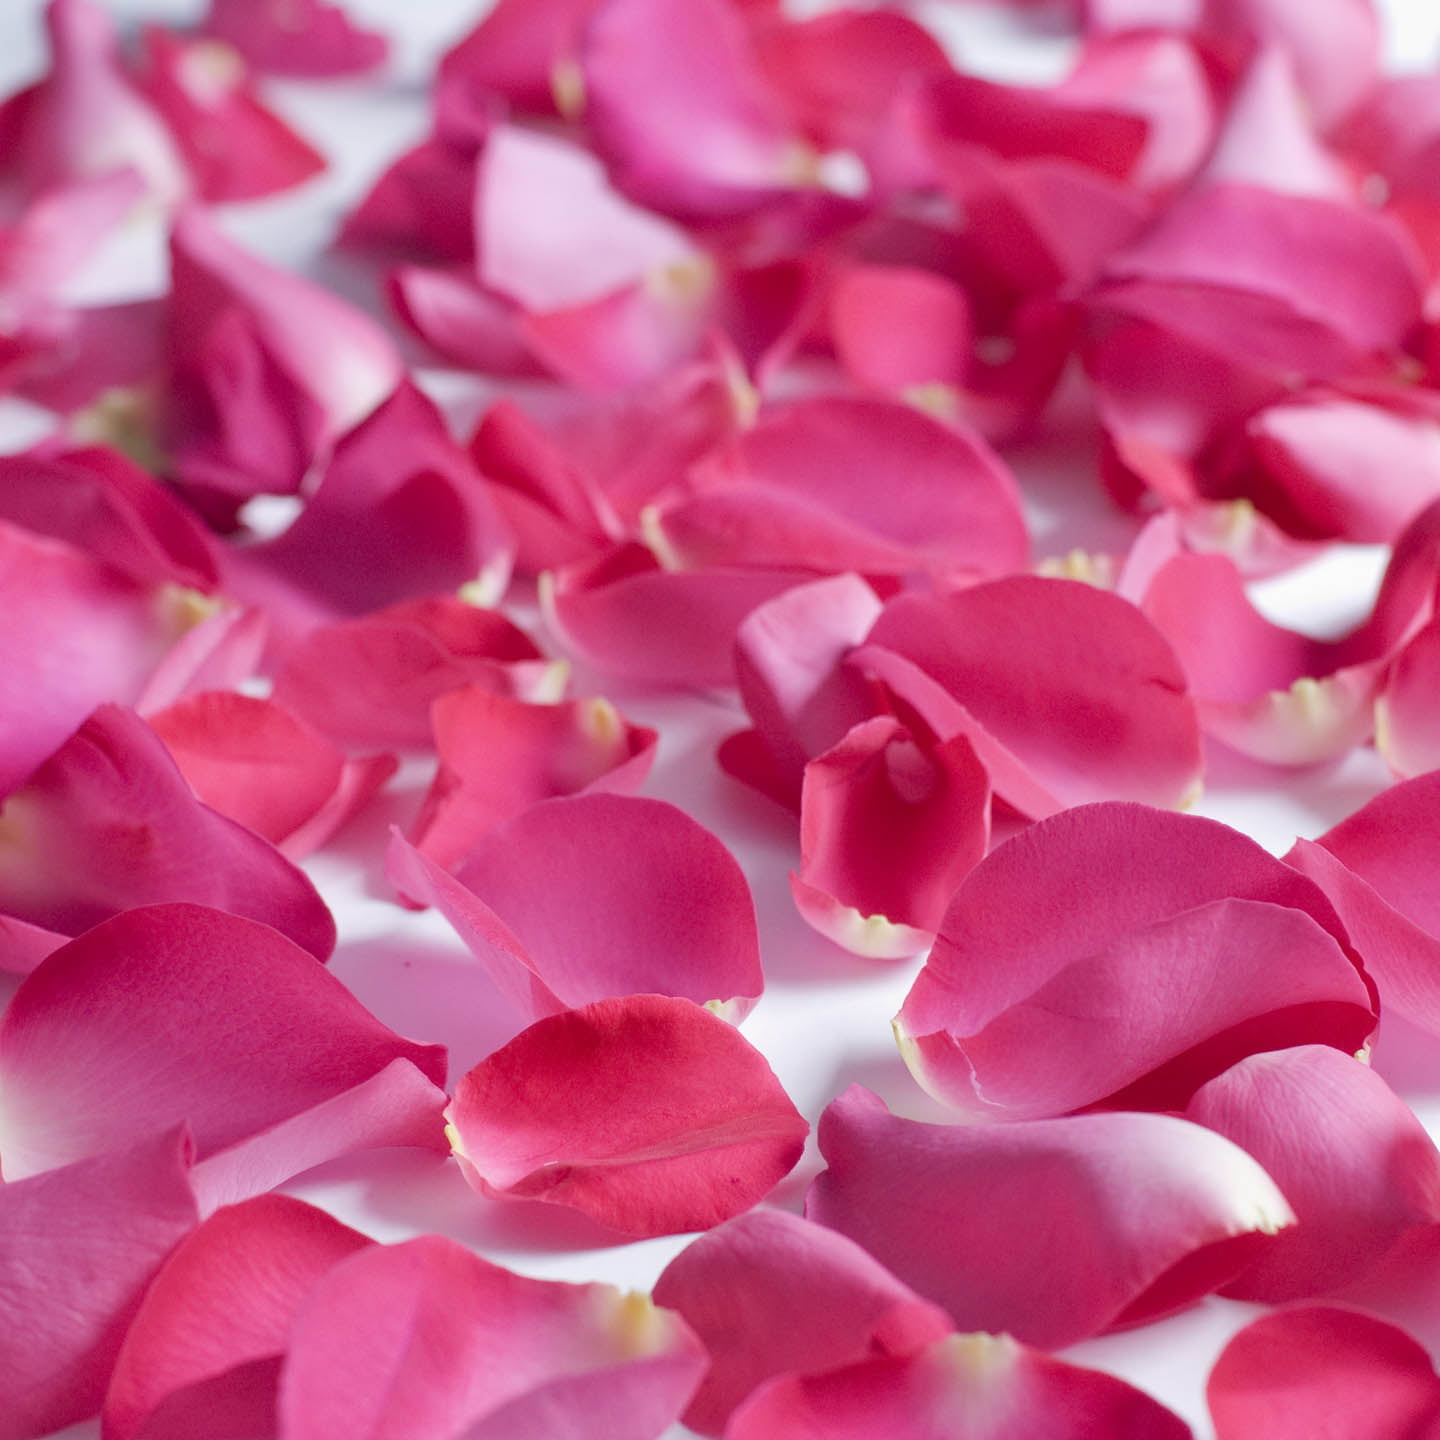 Rose Petals 3 Bags of Hot Pink Farm Direct Fresh Cut Flower Petals 